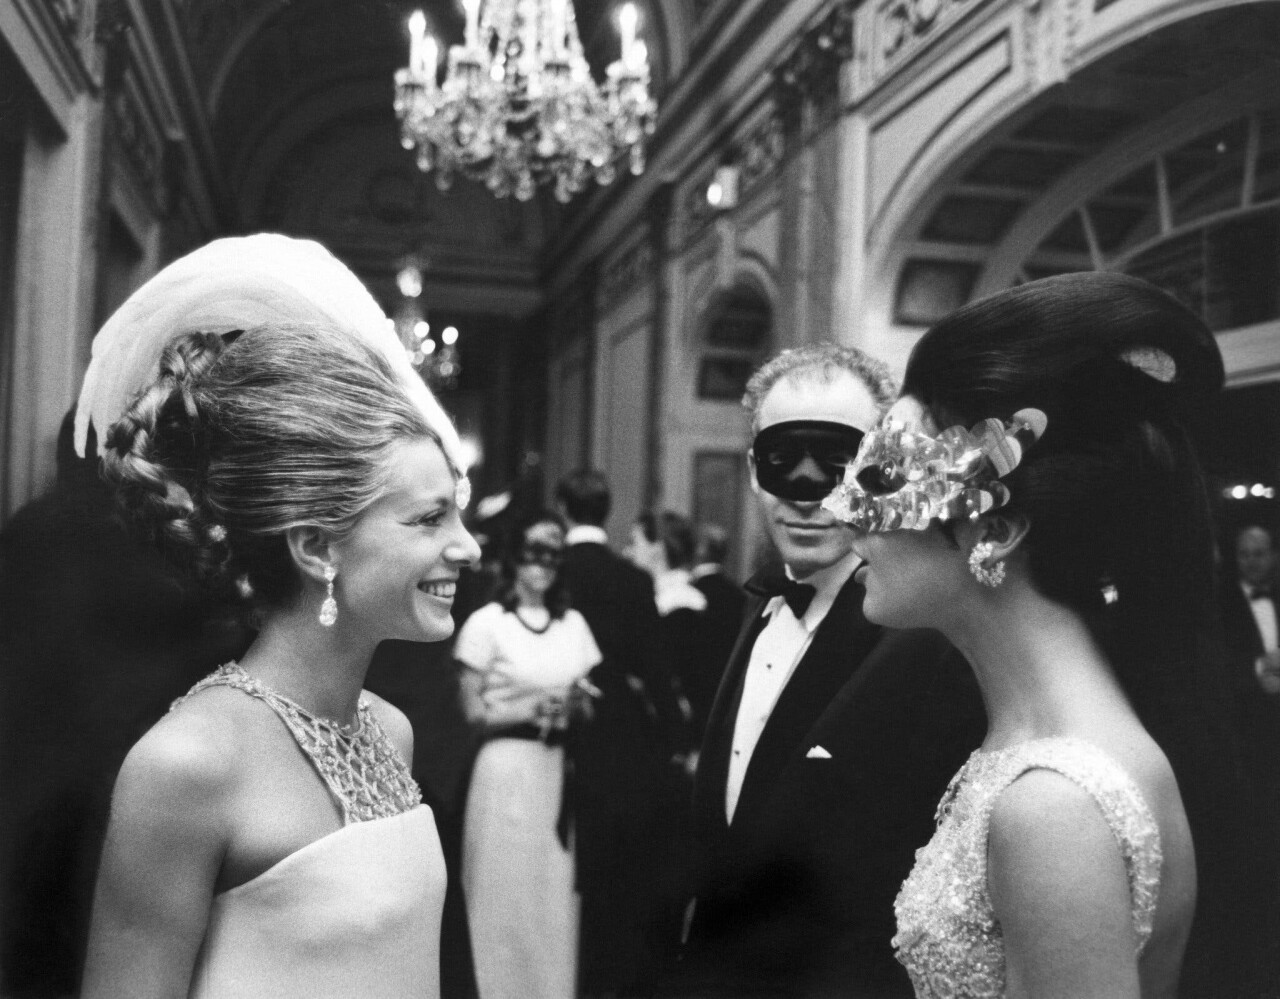 Гости на легендарном Чёрно-белом балу Трумэна Капоте в отеле Плаза, 1966 год. Фотограф Эллиотт Эрвитт